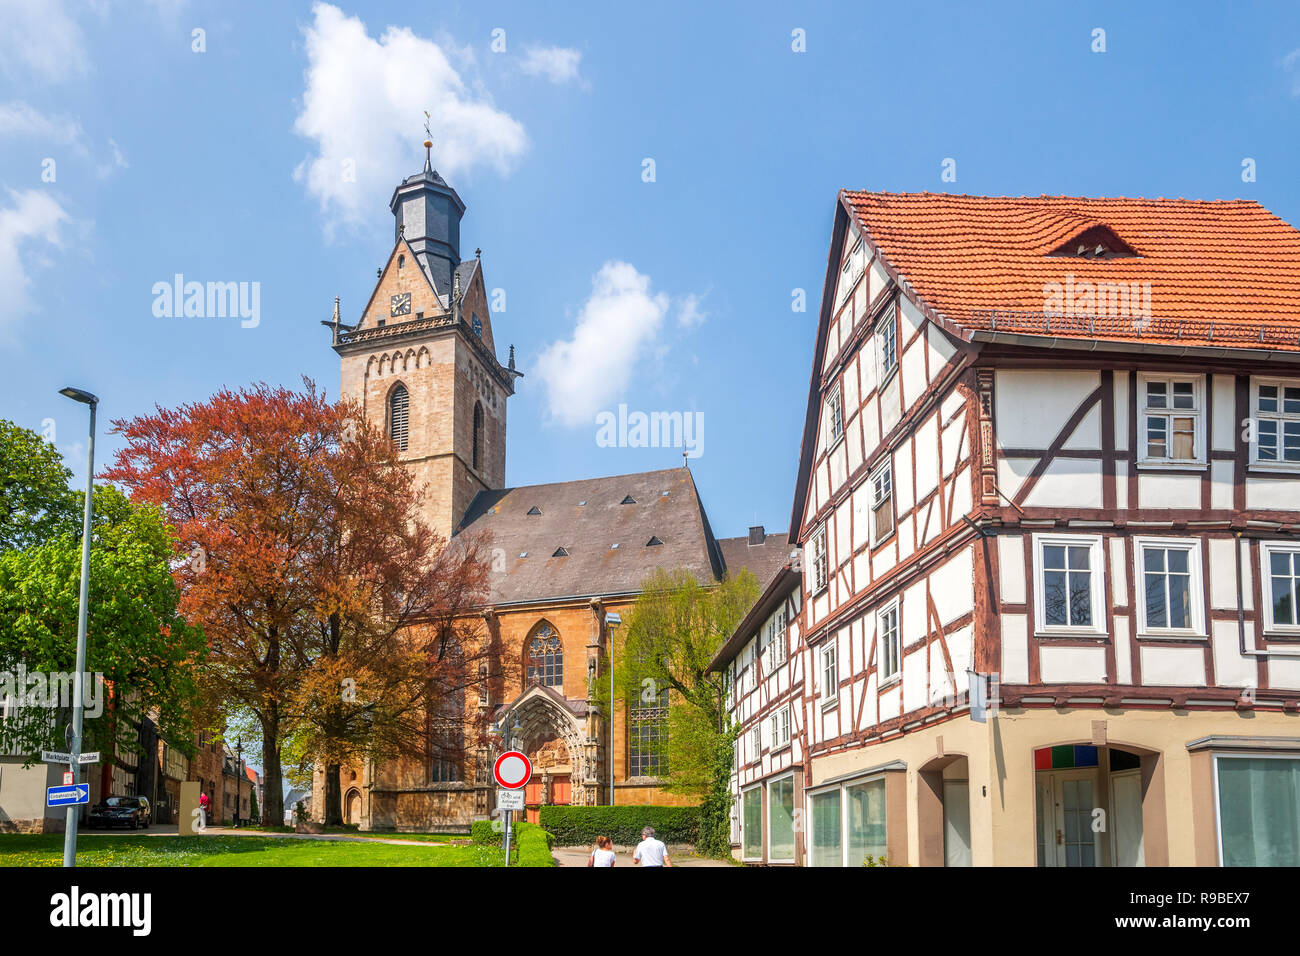 Kilians iglesia, Korbach, Alemania Foto de stock